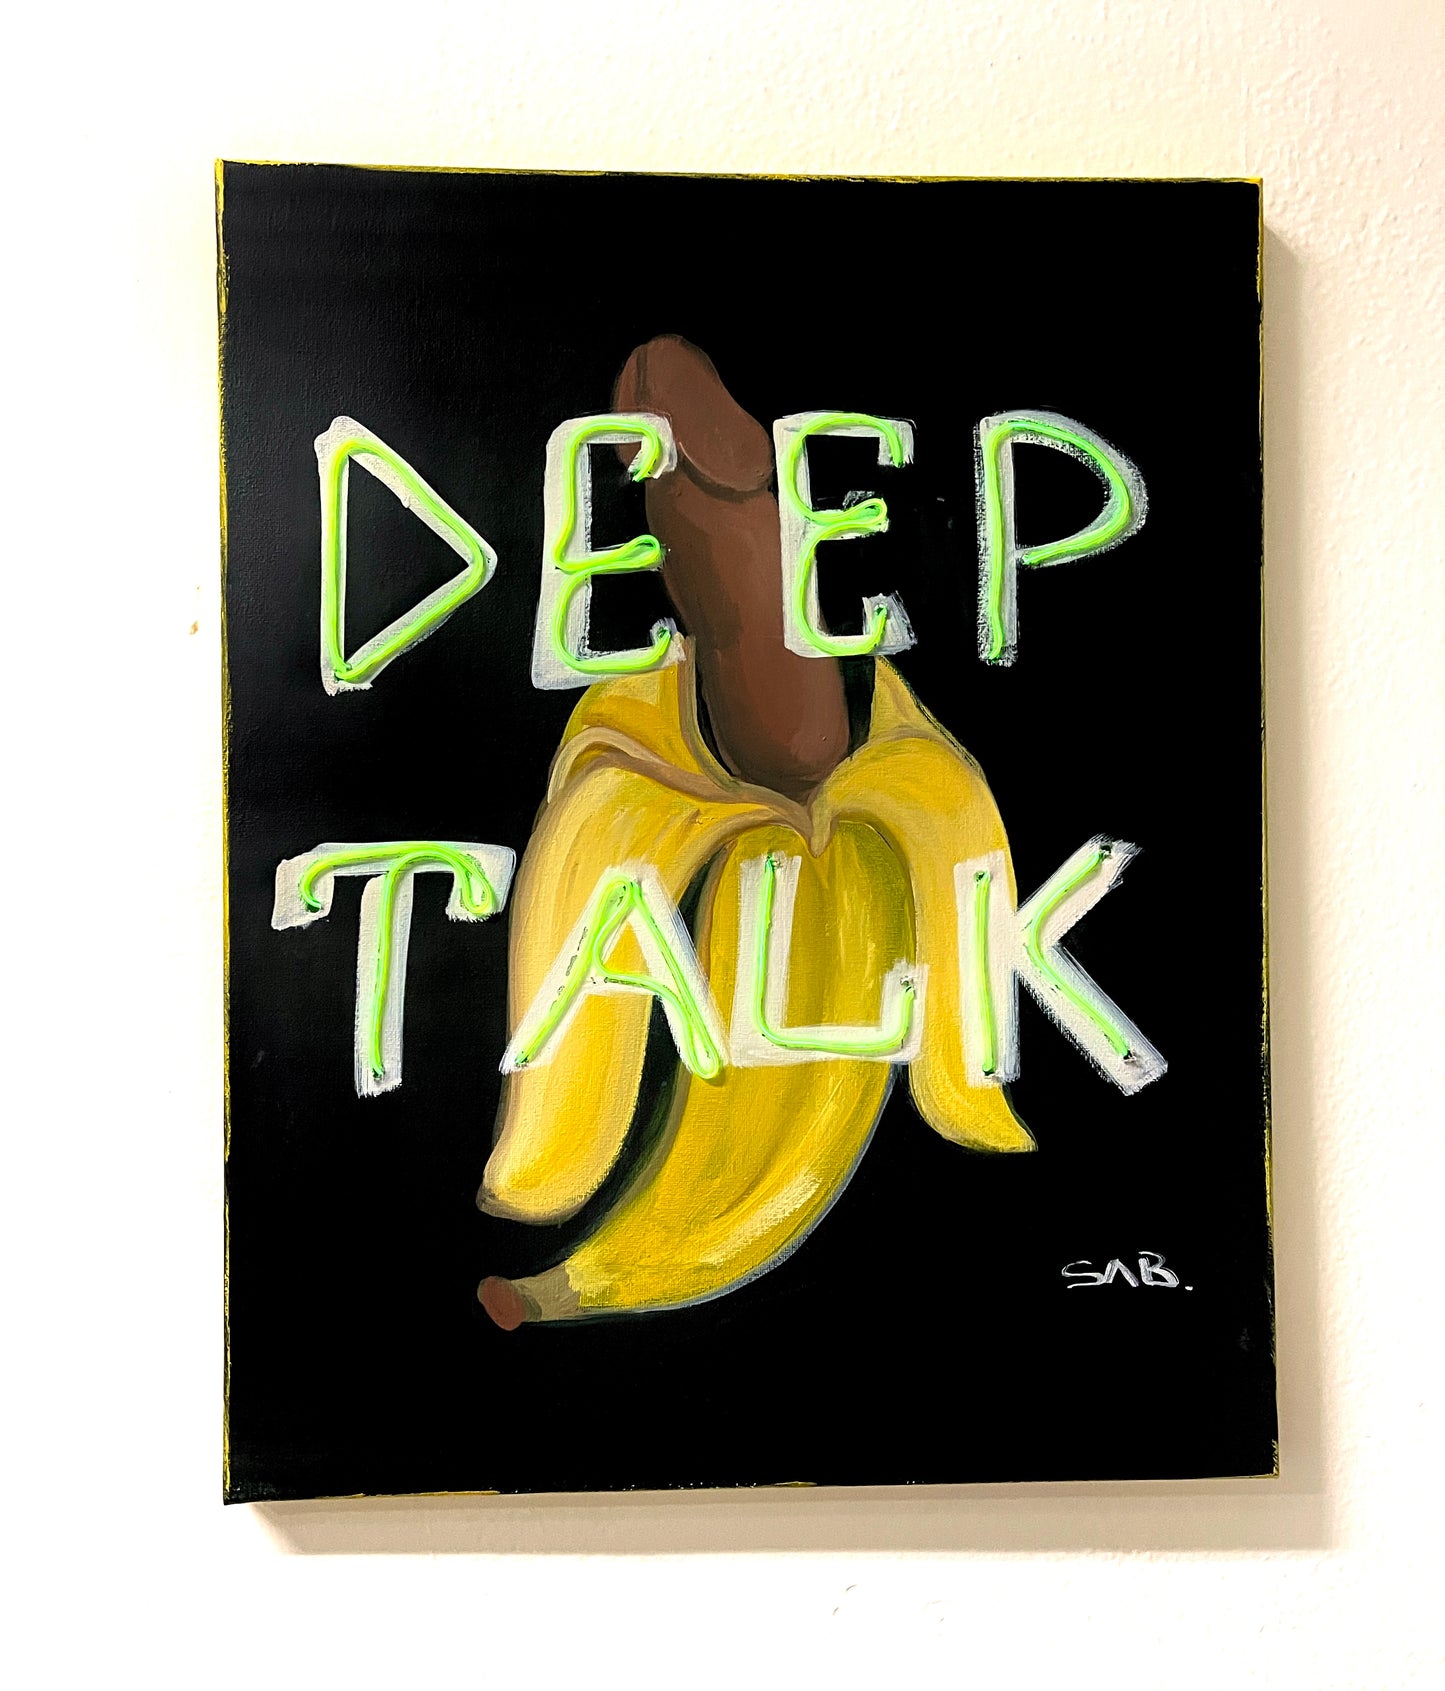 Deep Talk pop art neon sign